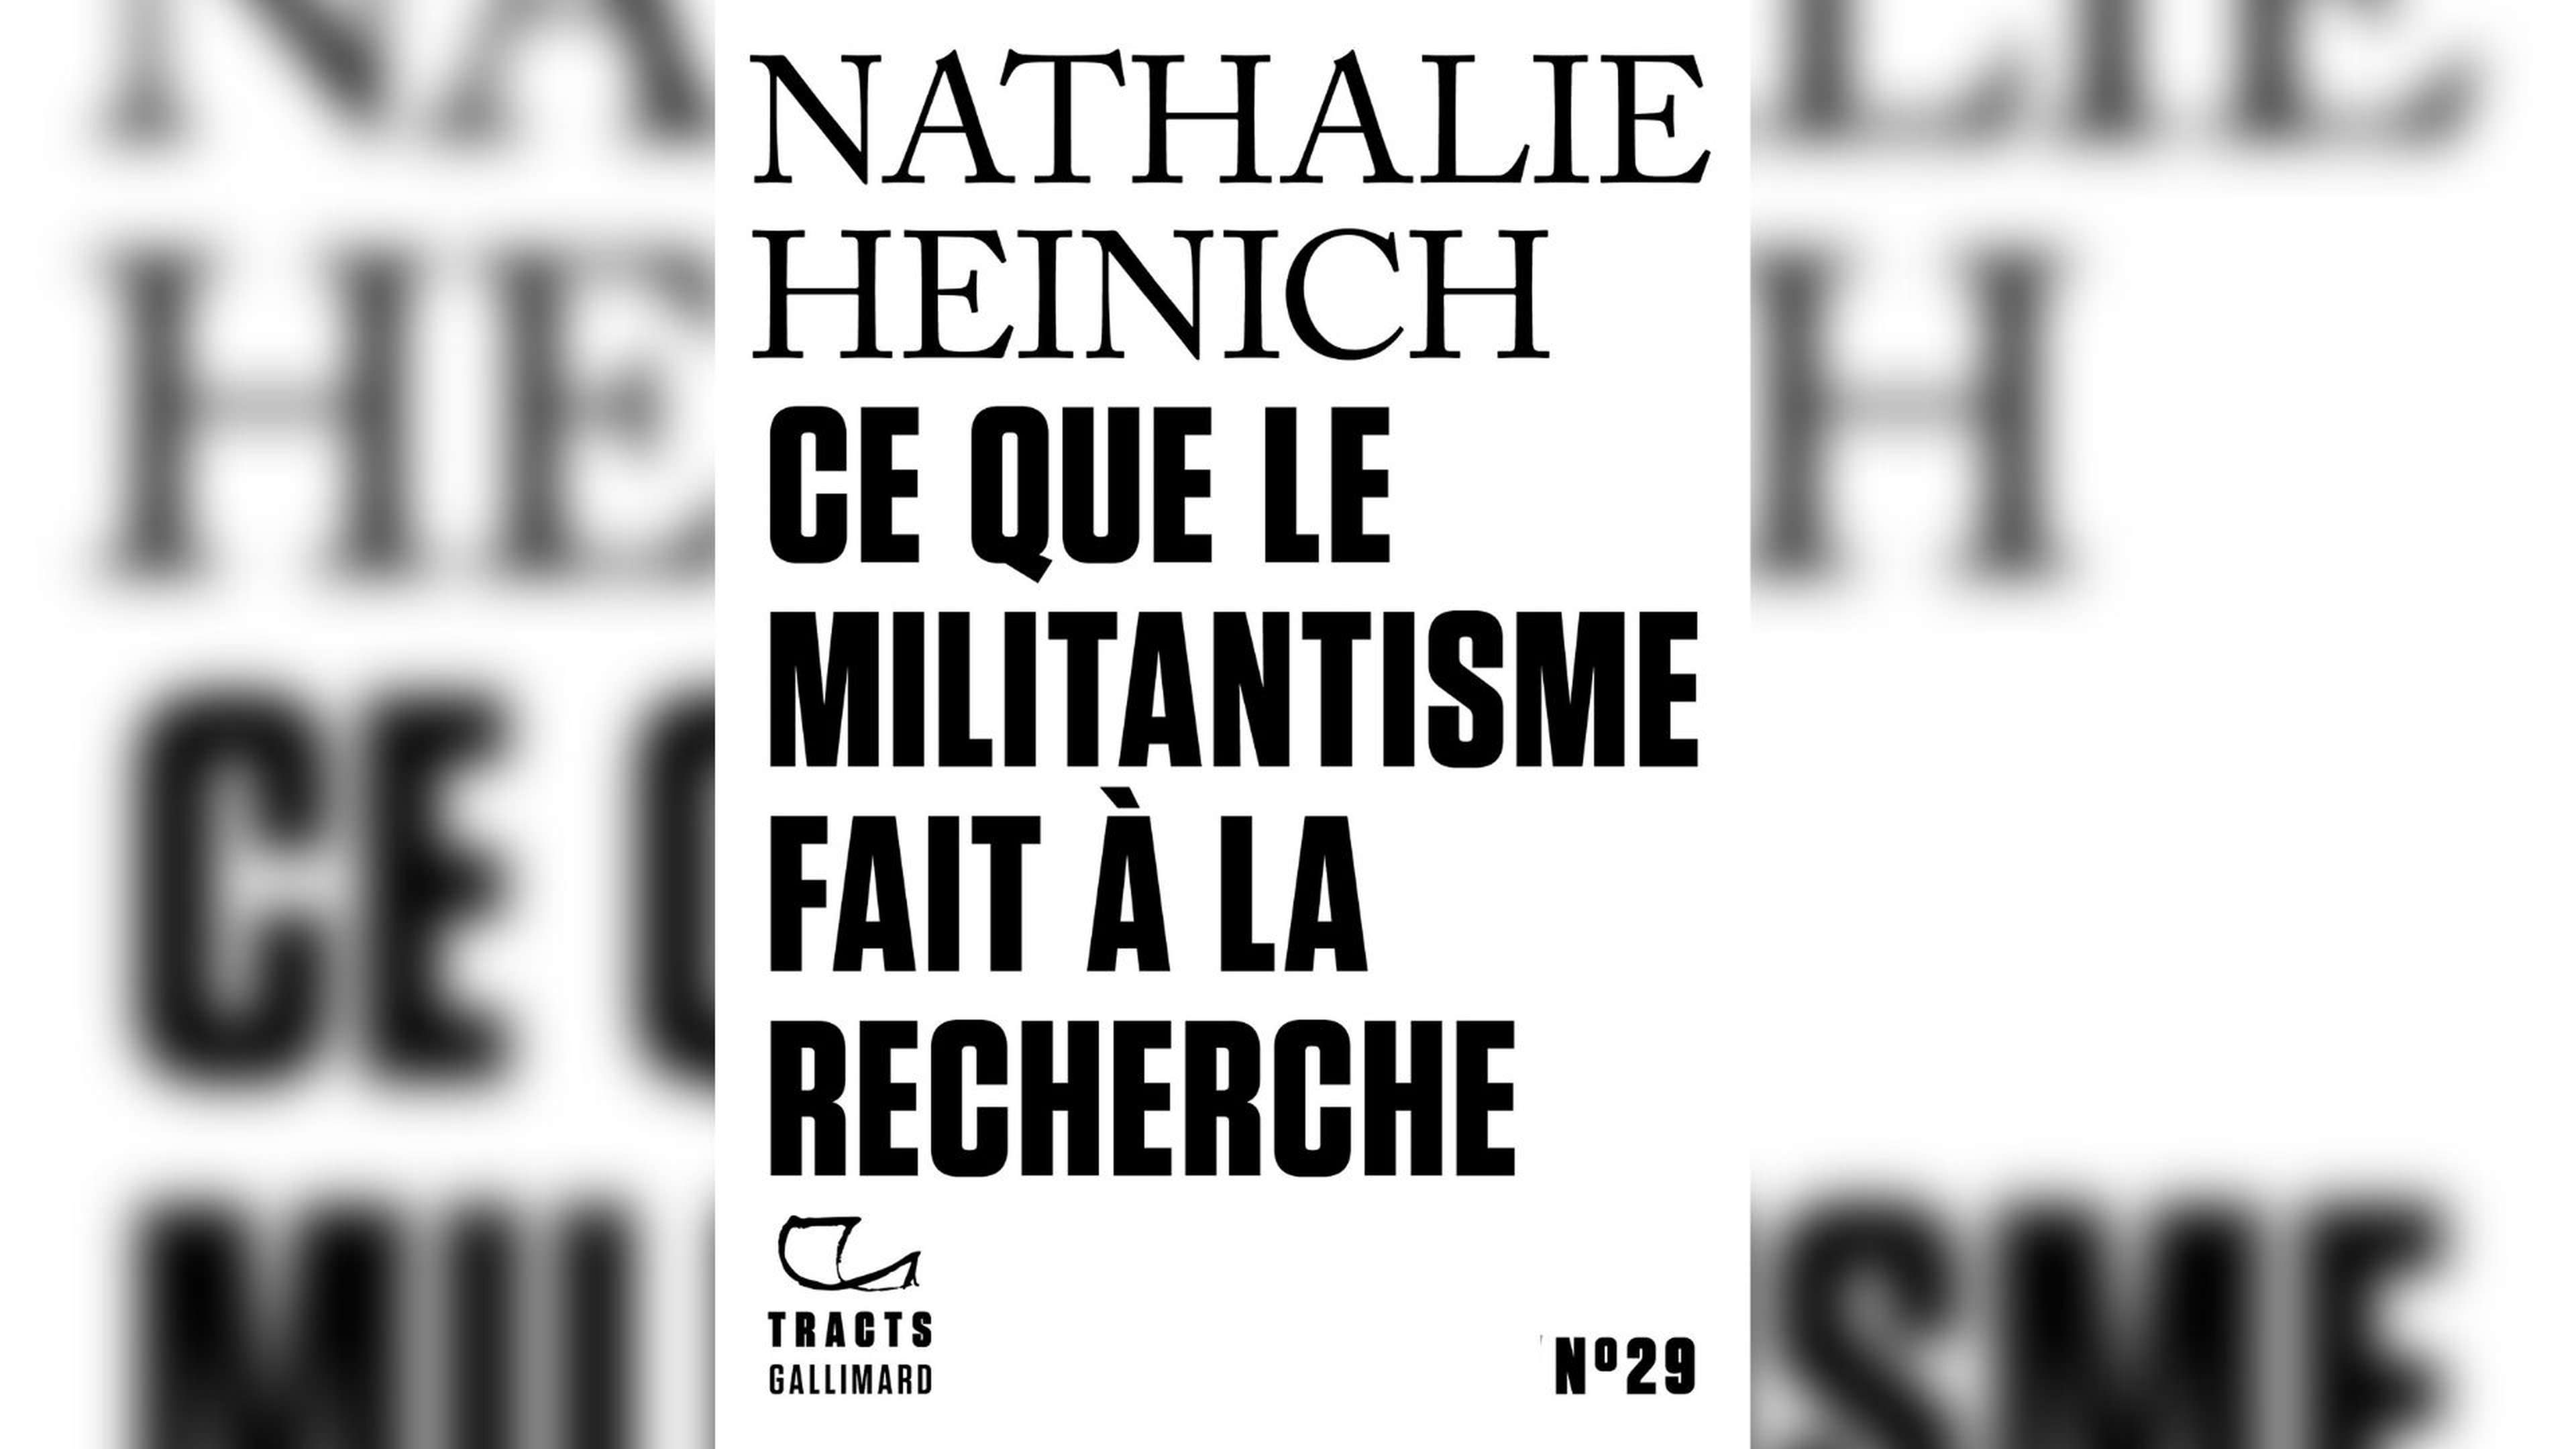 /2021/07/nathalie-heinrich-militantisme-recherche-critique-livre